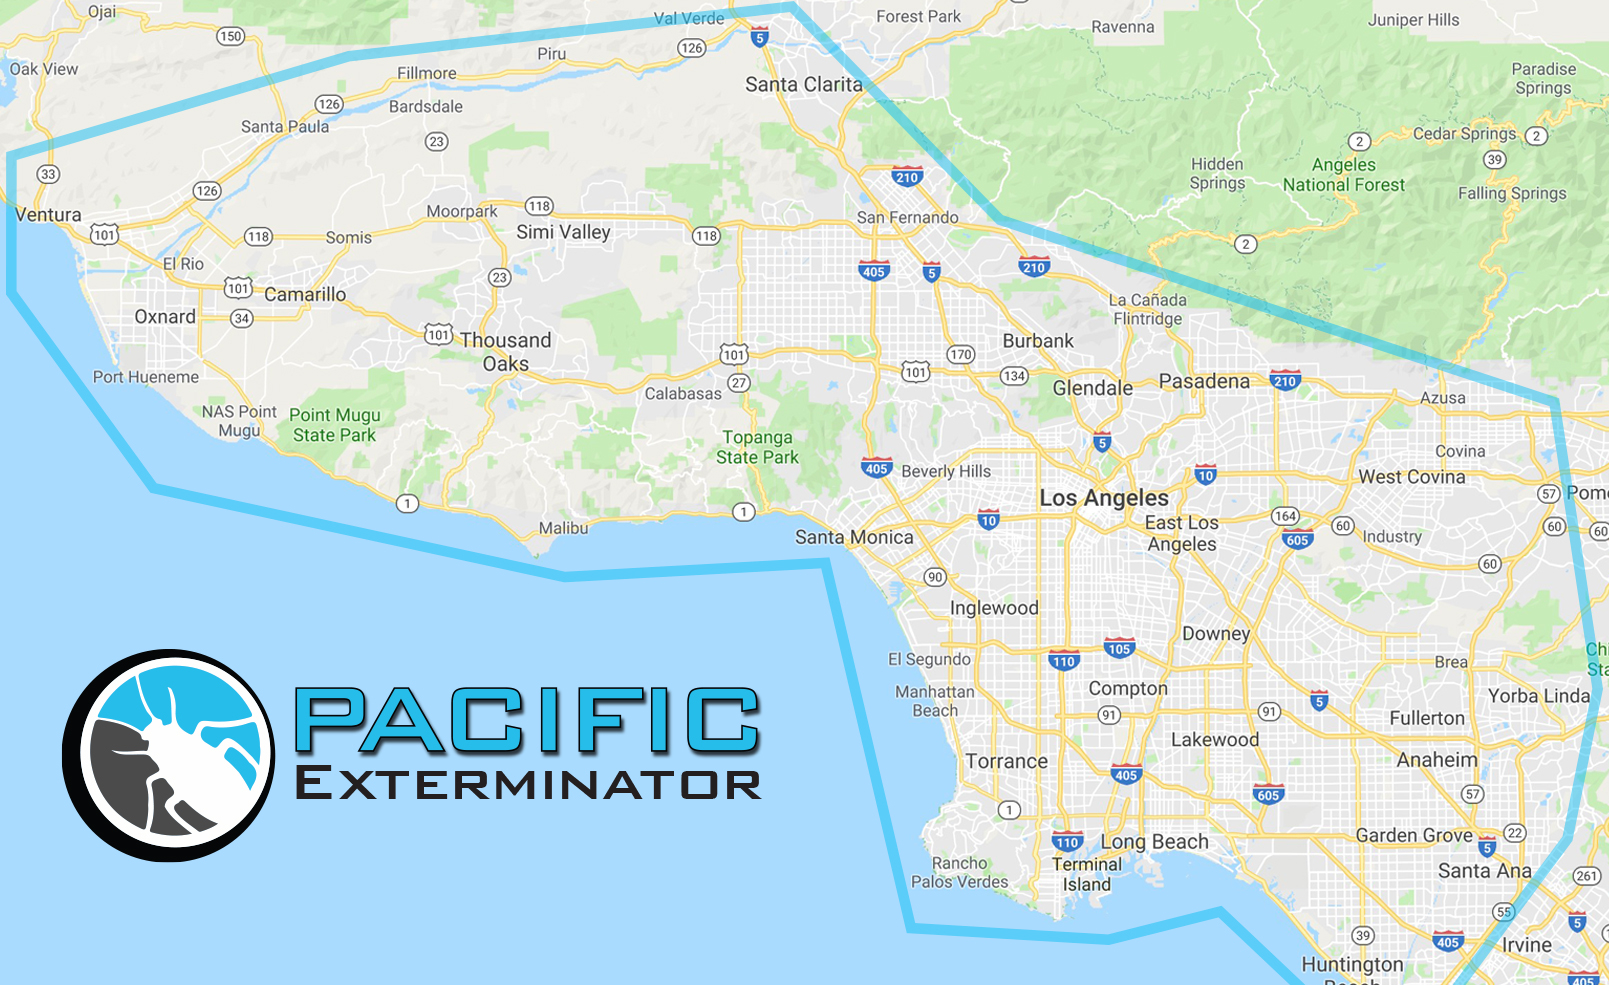 Pacific Exterminator Pest Control Service Area Map